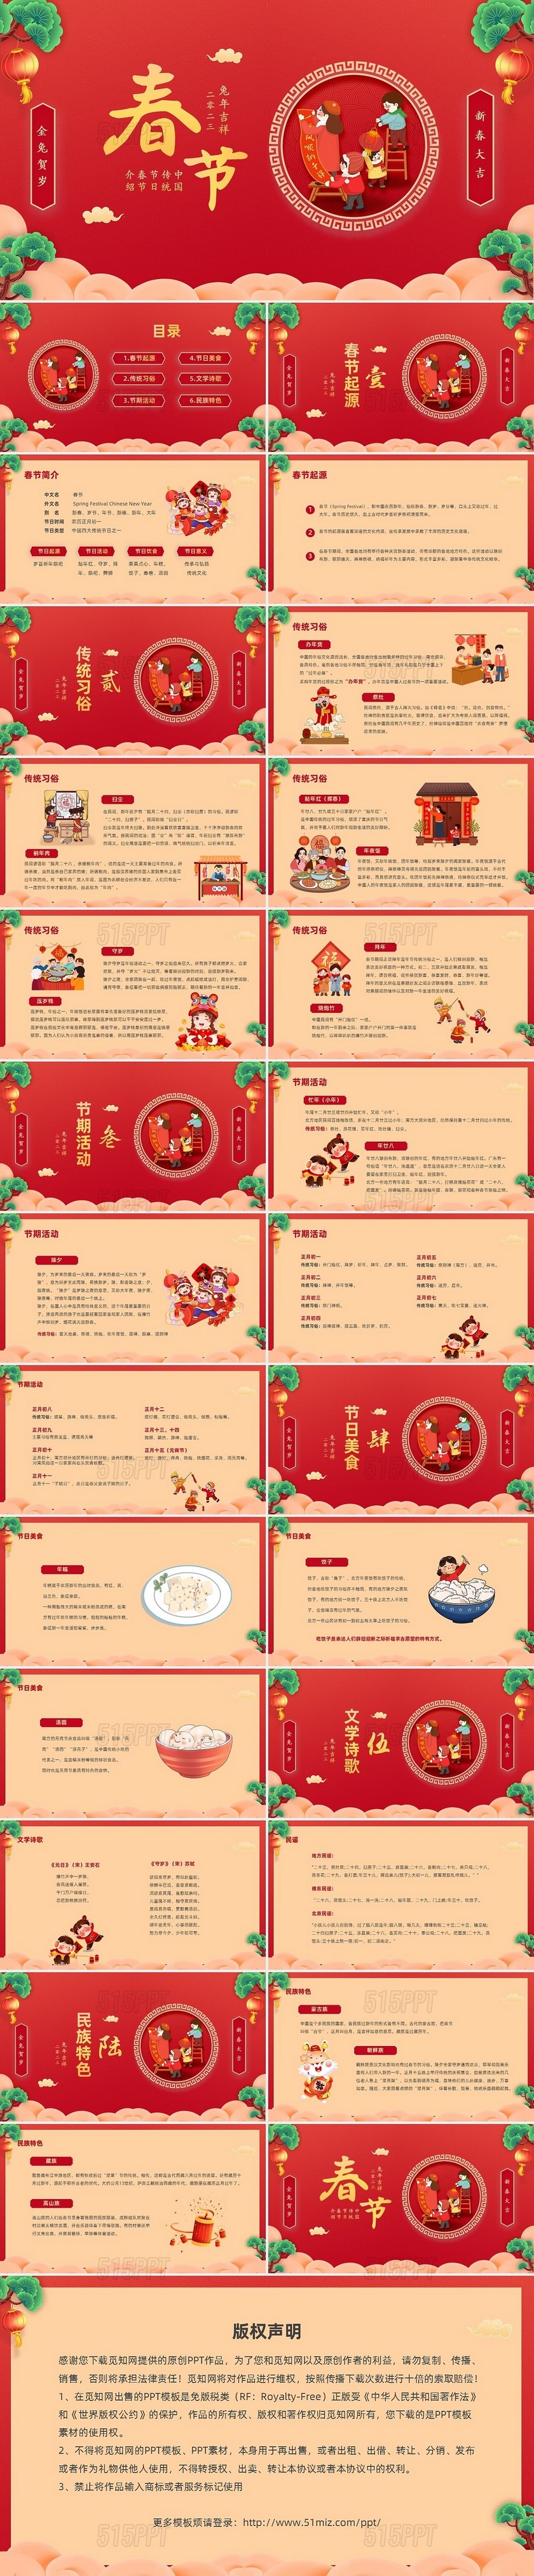 红色温馨卡通儿童插画中国传统春节节日介绍PPT